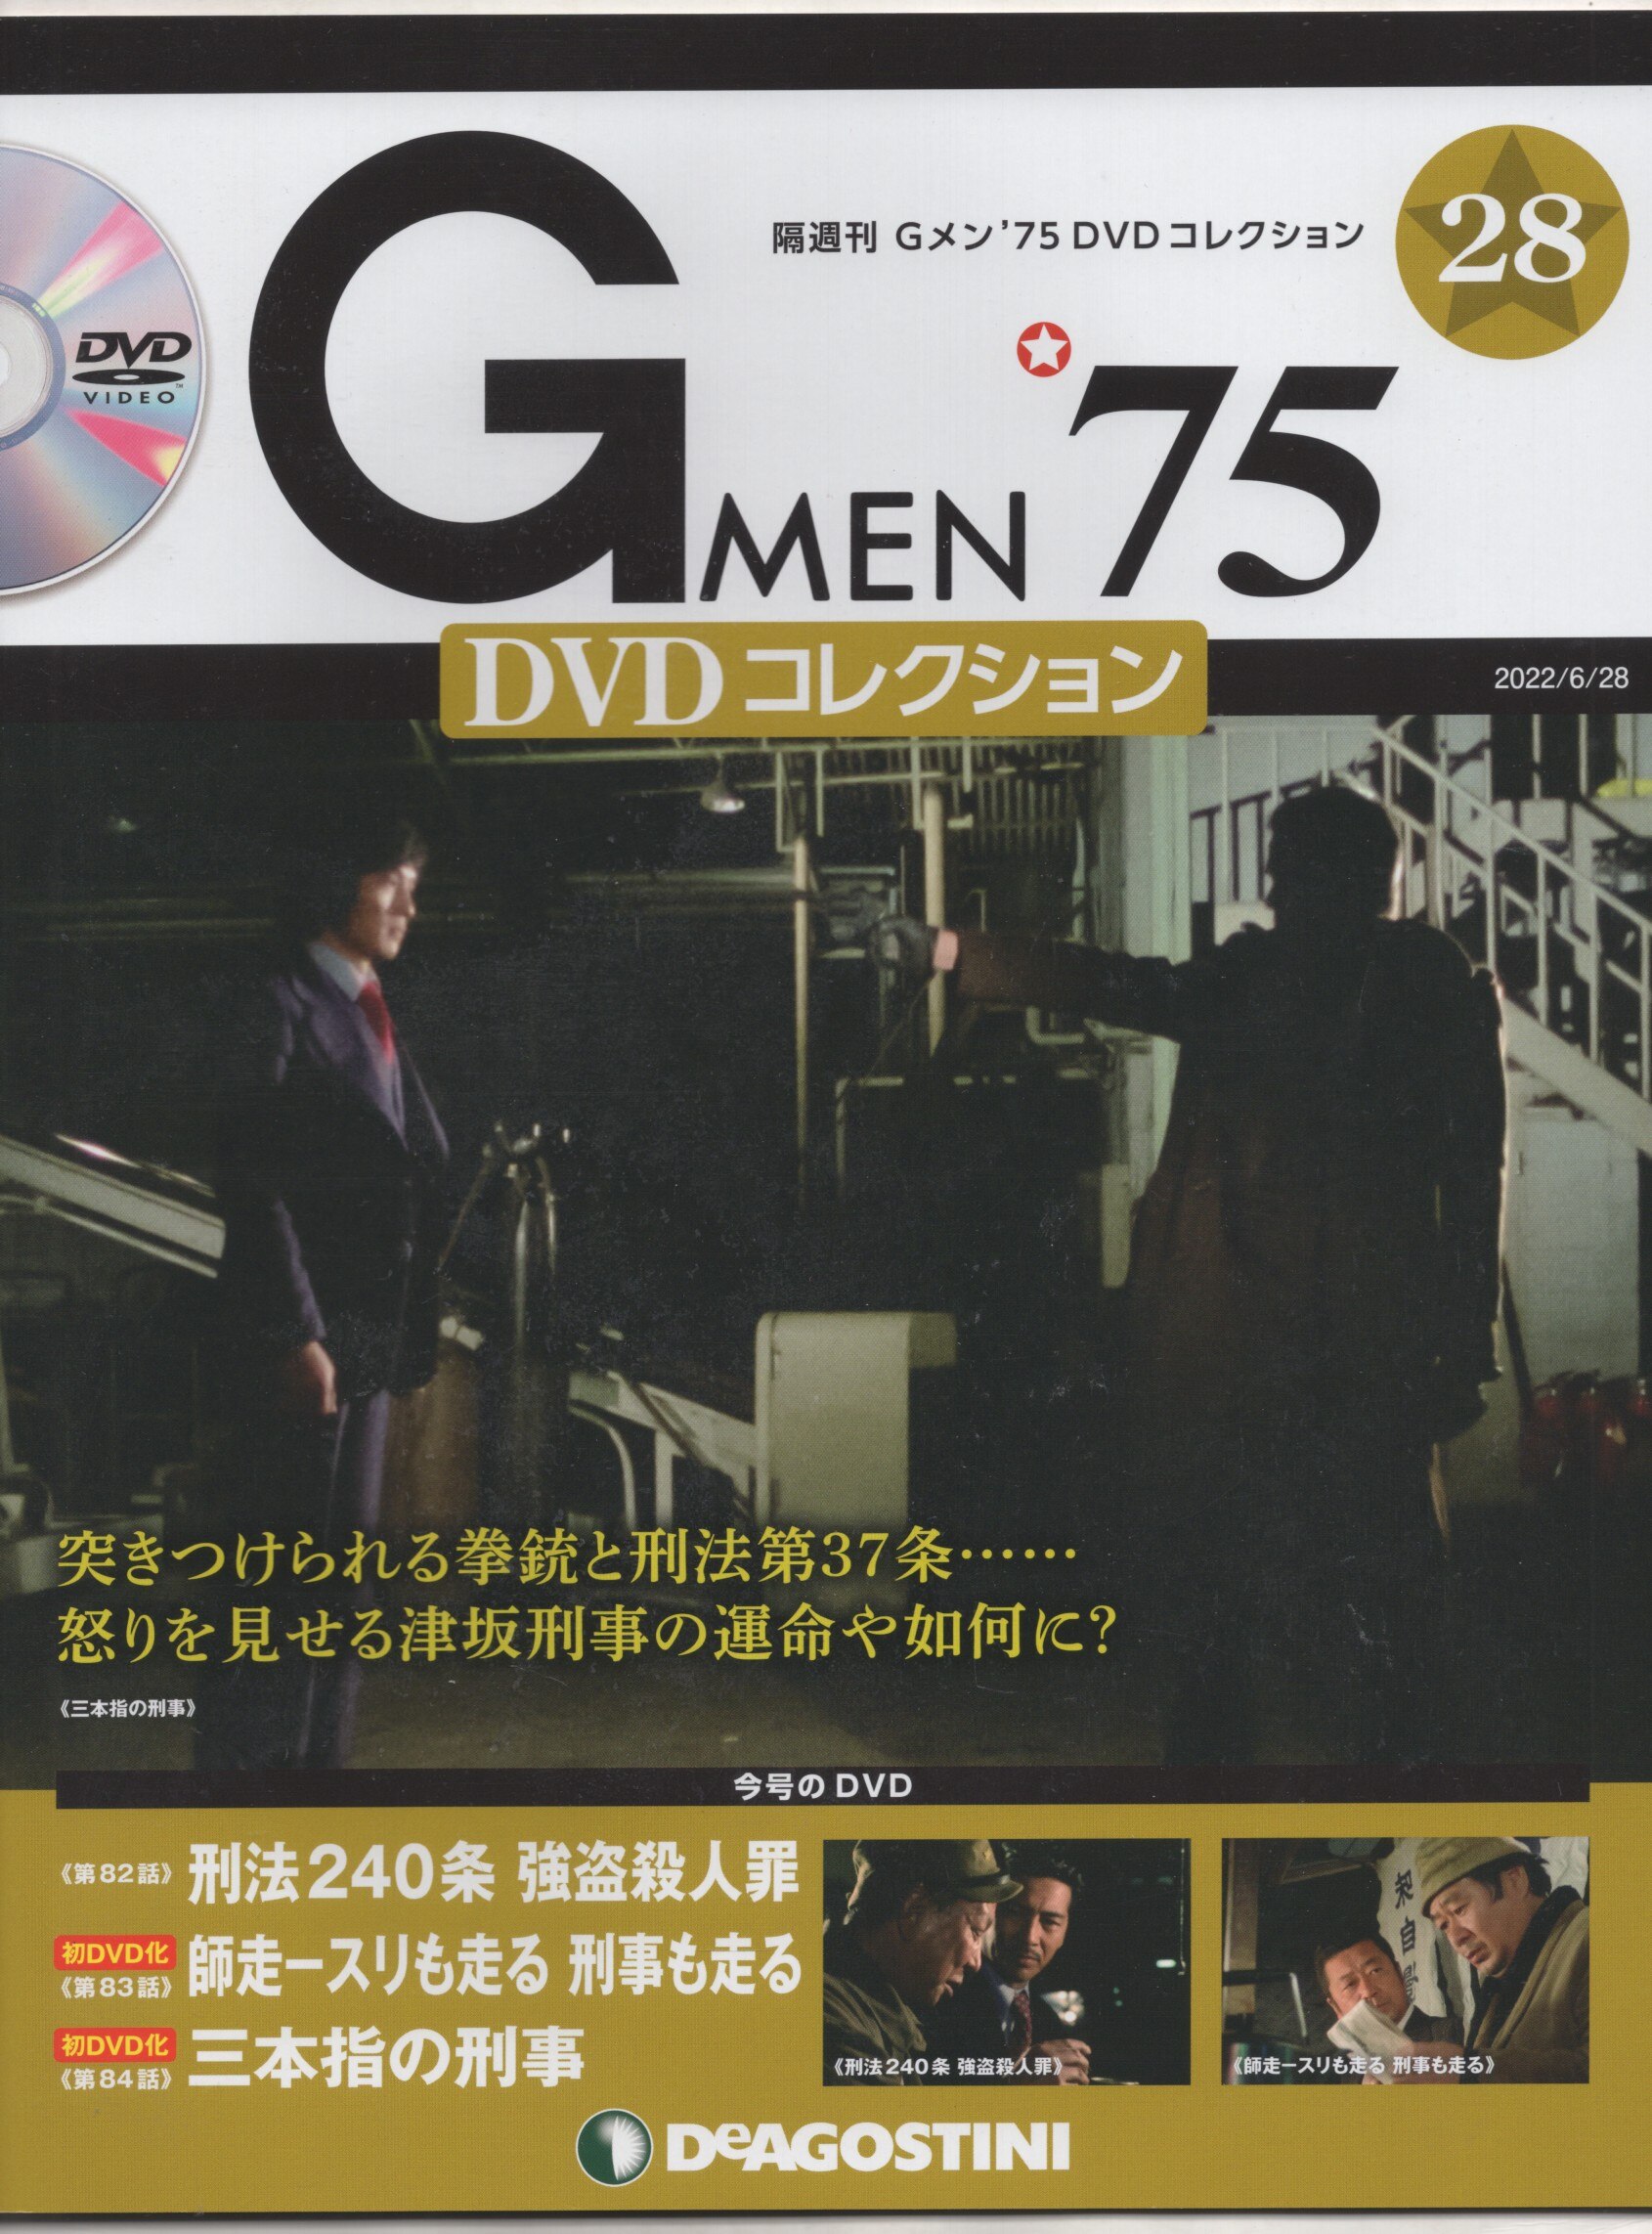 ディアゴスティーニ 国内ドラマDVD Gメン '75 DVDコレクション 28